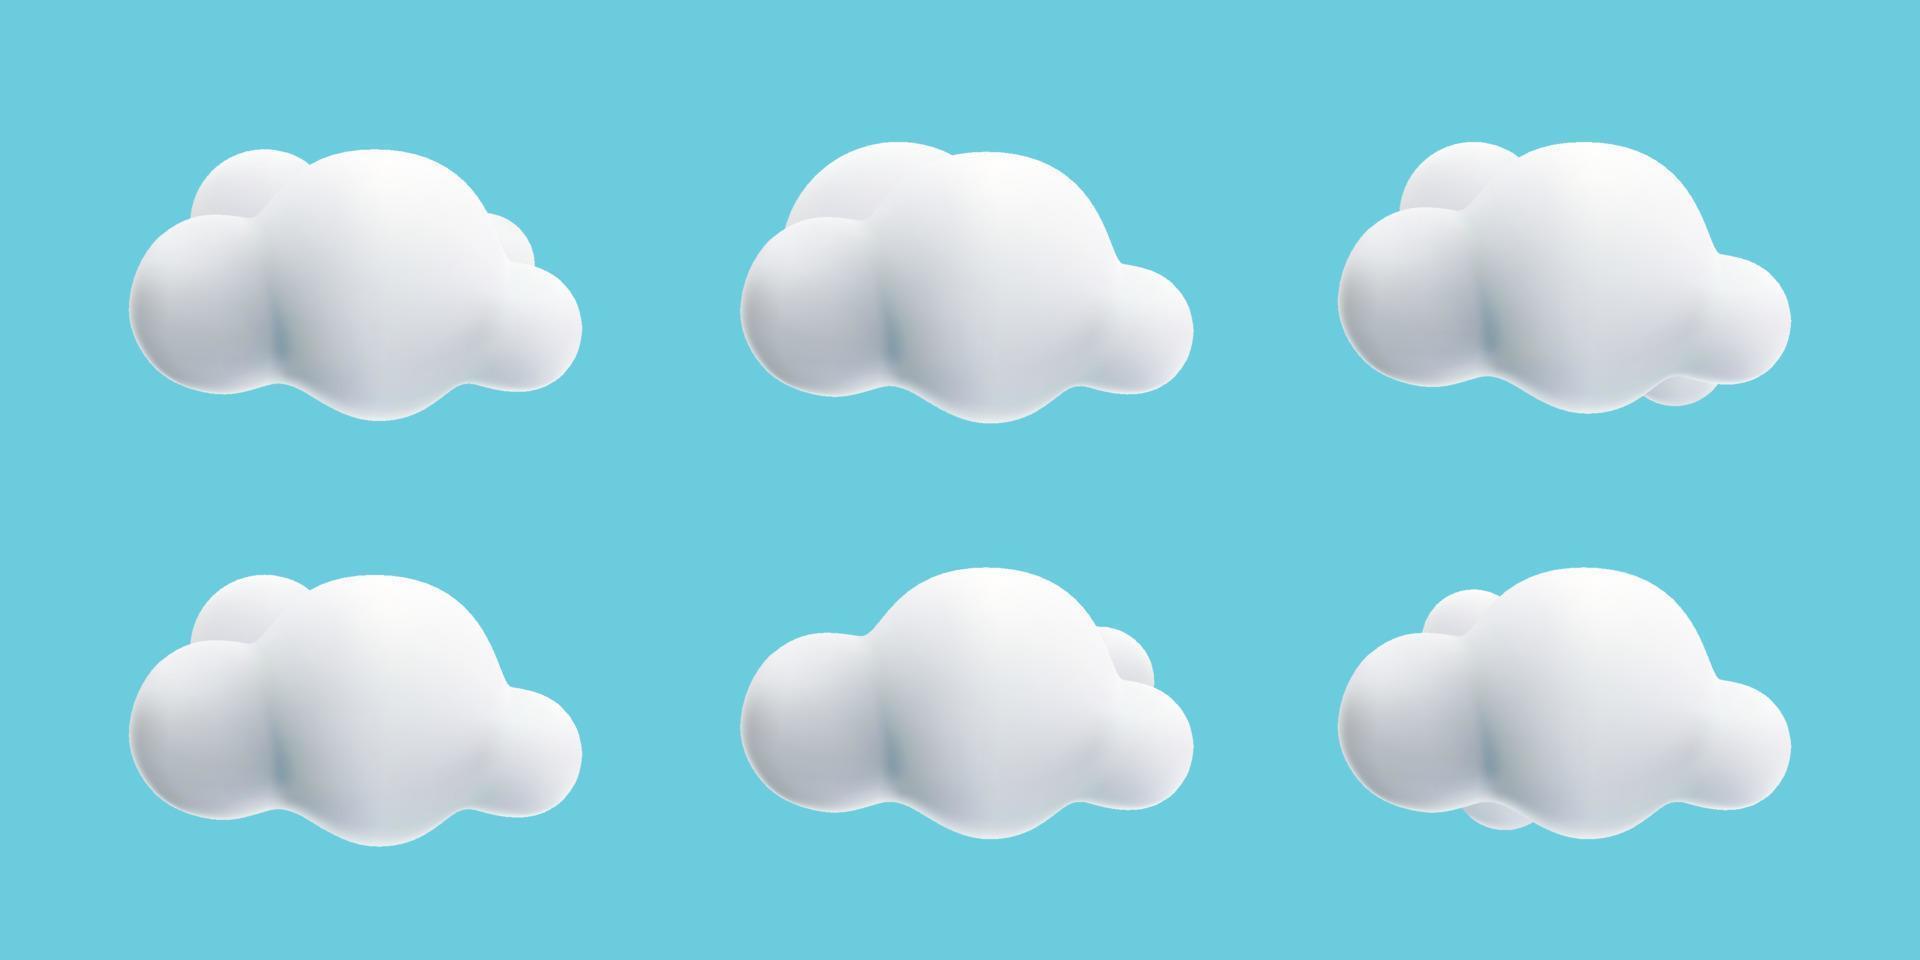 coleção de estilo de desenho animado de nuvem fofa branca 3d definida no céu azul vetor